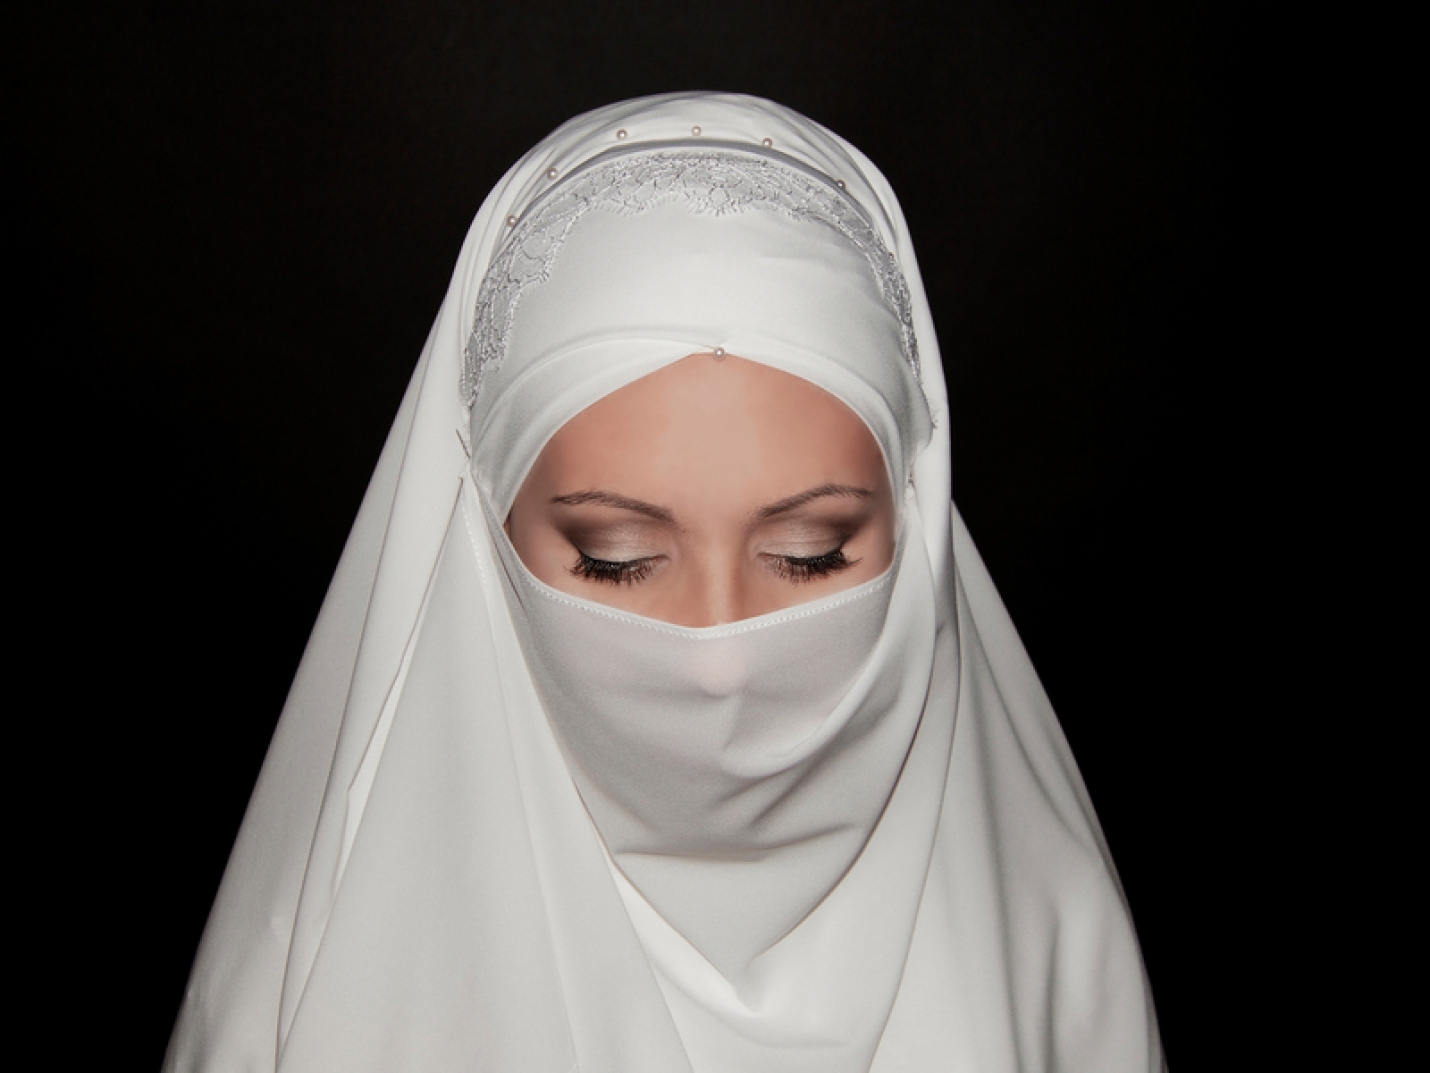 Мусульманка подала в суд на авиакомпанию из-за просьбы снять хиджаб